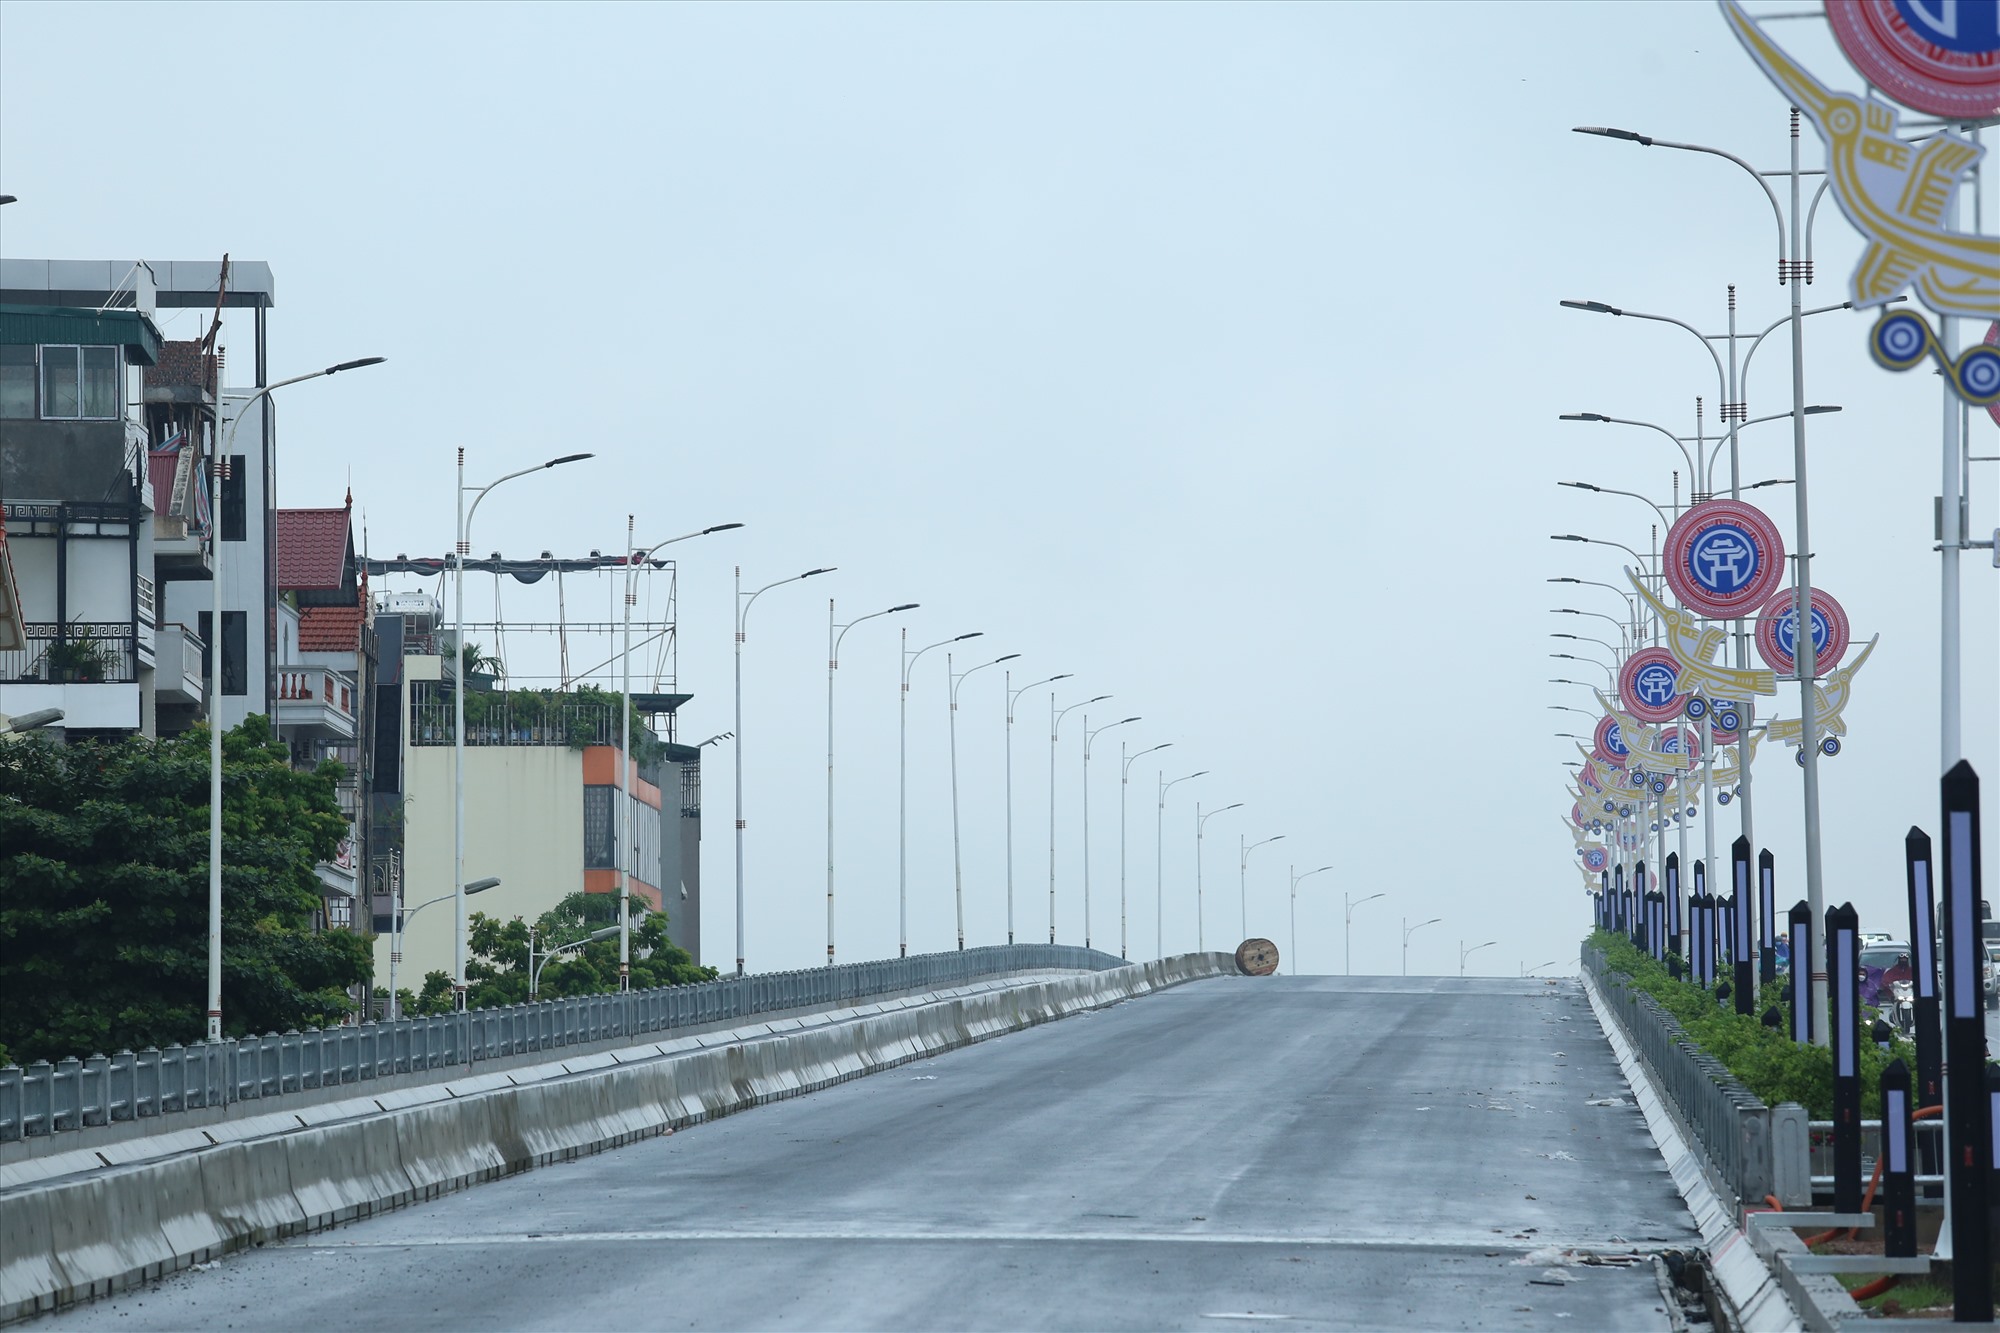 Cầu Vĩnh Tuy 2 sau khi hoàn thiện, thông xe sẽ trở thành cây cầu rộng nhất qua sông Hồng trên địa bàn TP Hà Nội. Ảnh: Vĩnh Hoàng